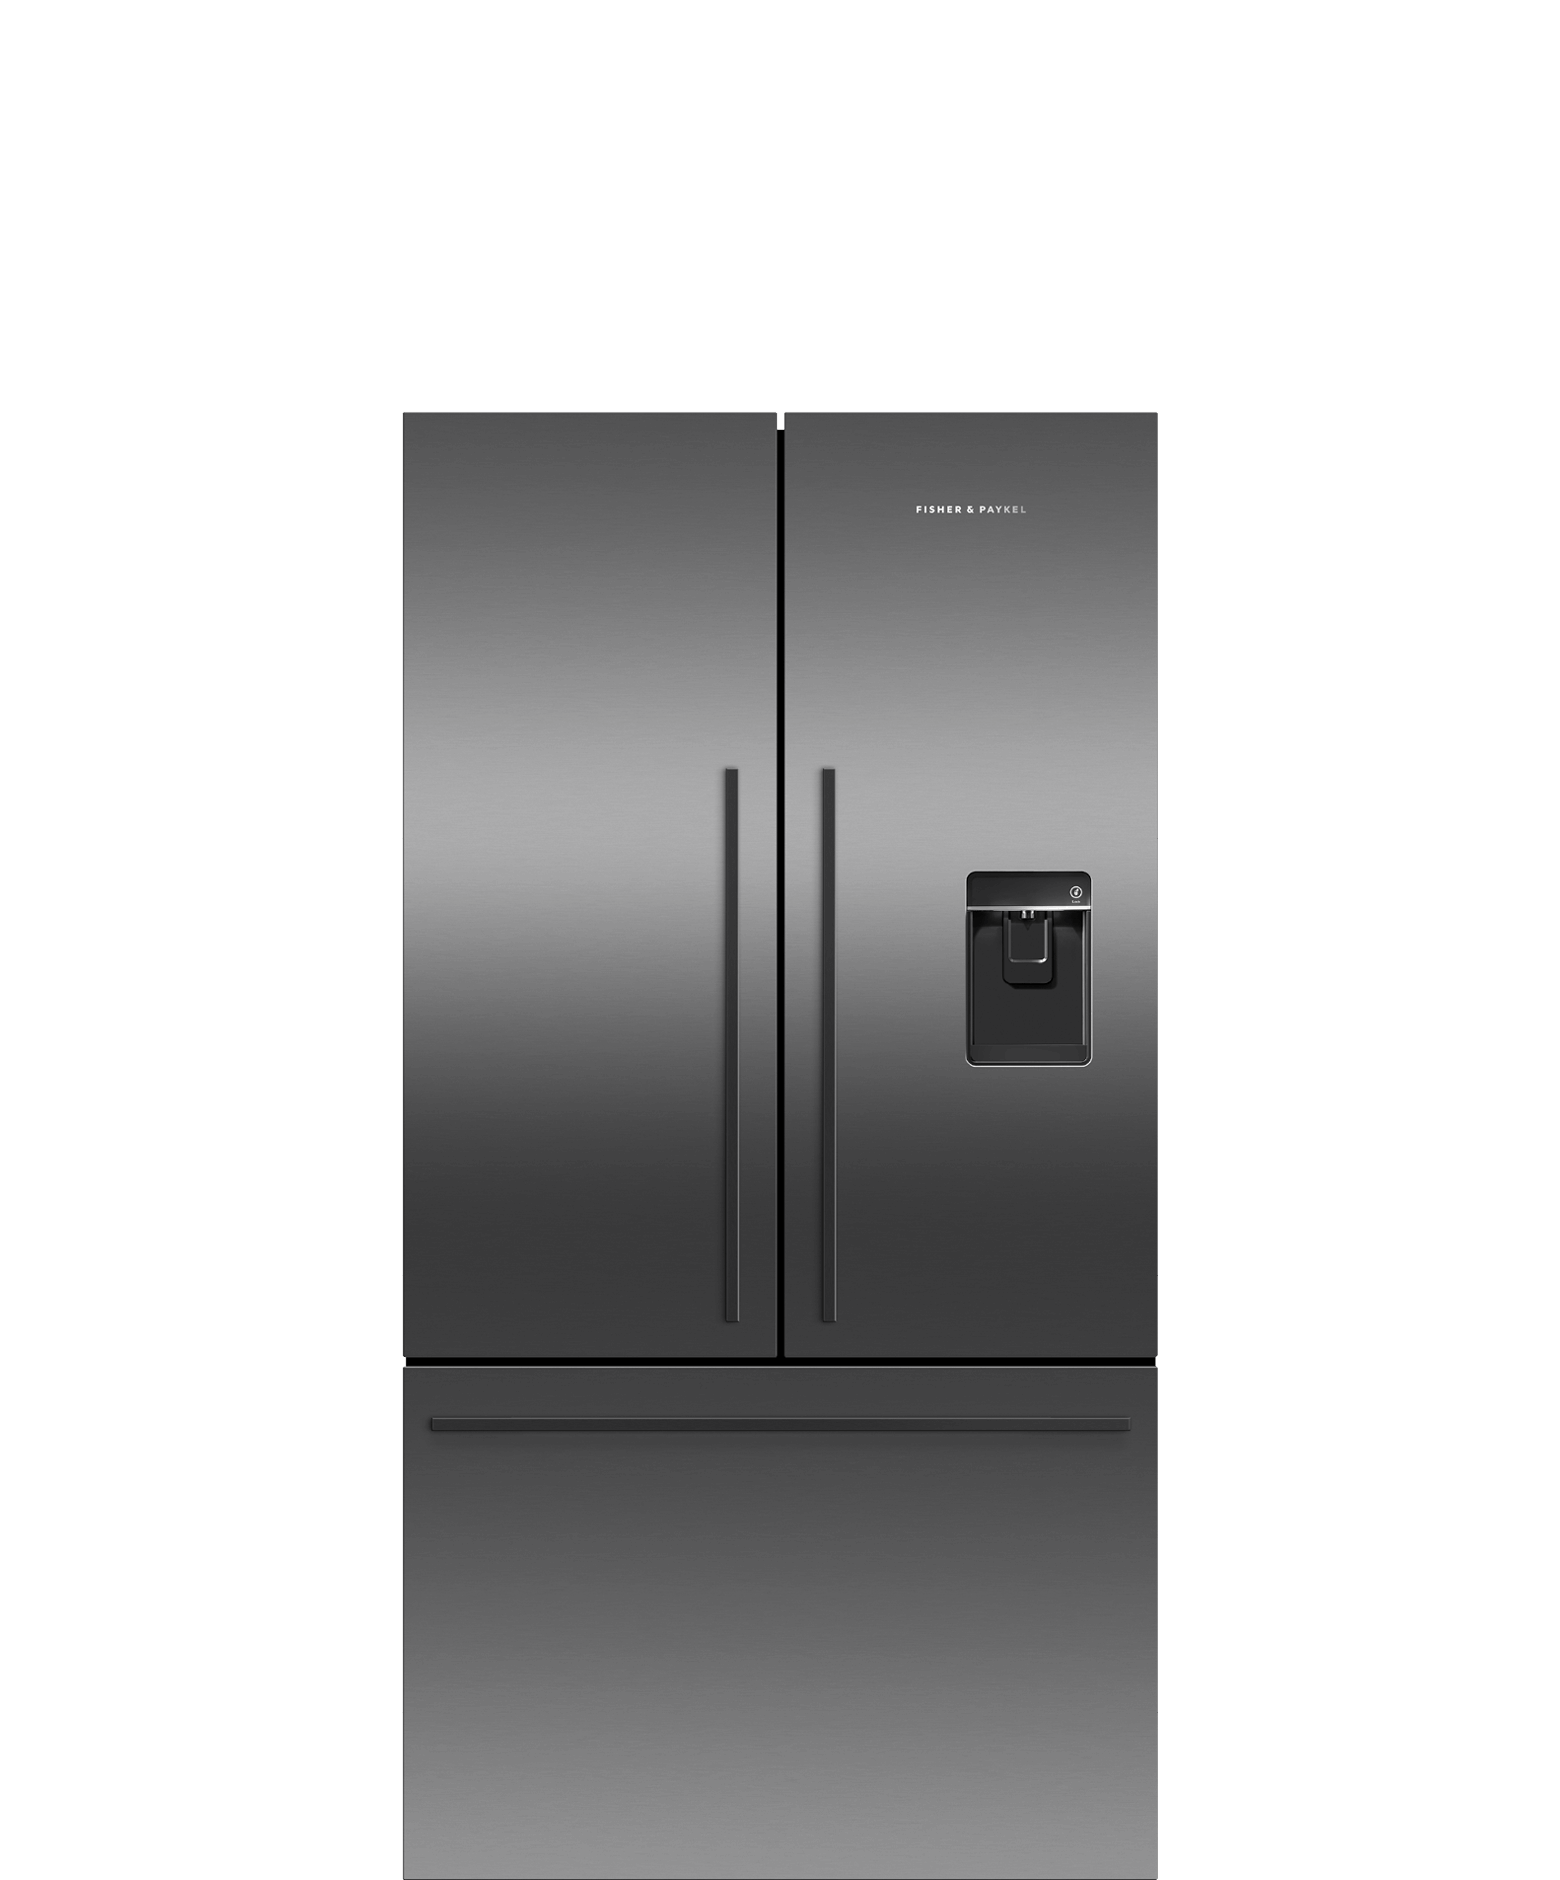 黑色法式對開門雪櫃, 90cm, 545L, 自動製冰和冰水